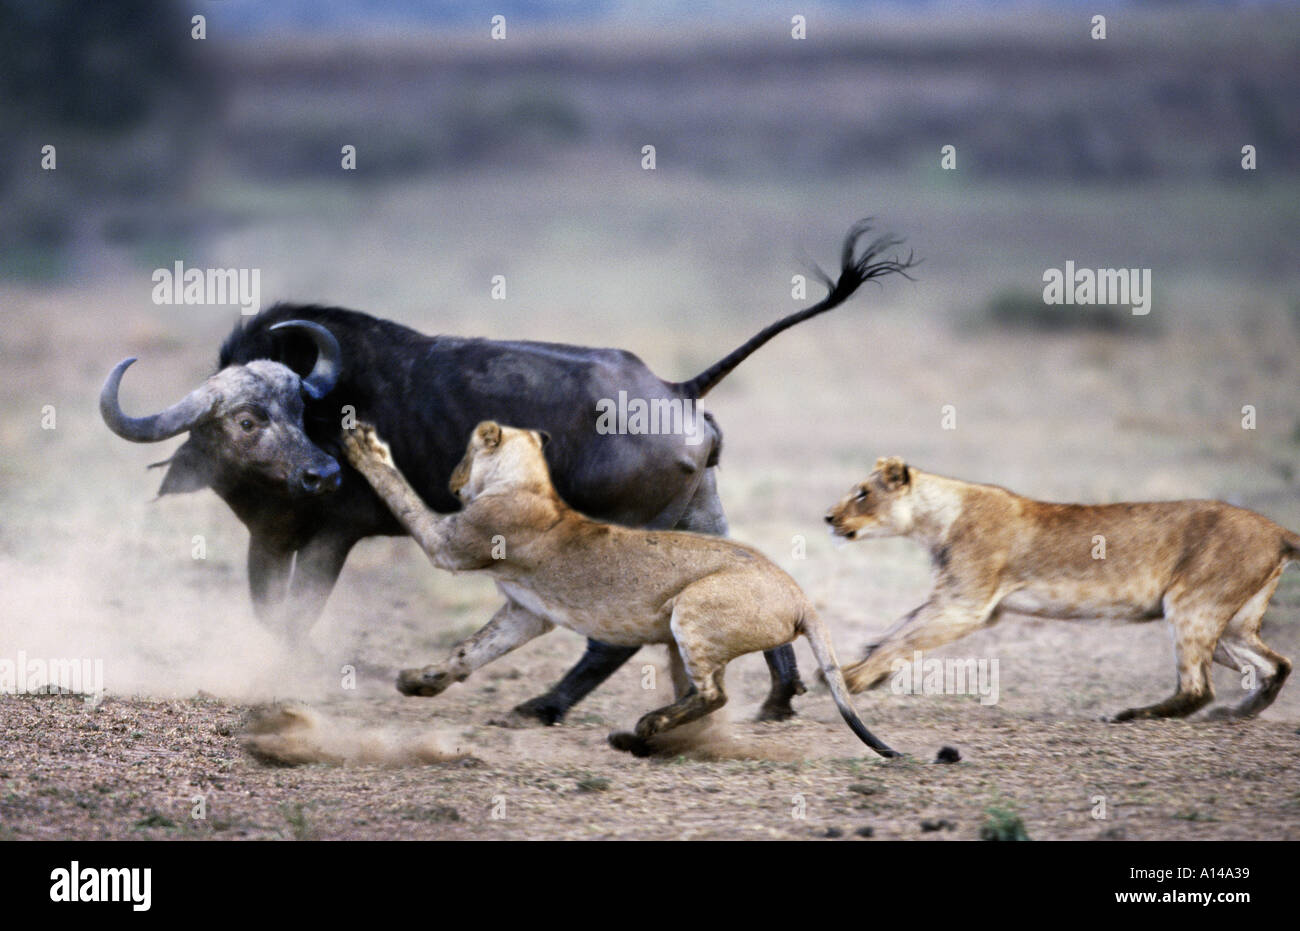 Борьба за существование конкурентная. Соперничество животных. Конкуренция в природе. Конфликт между животными. Борьба животных в дикой природе.